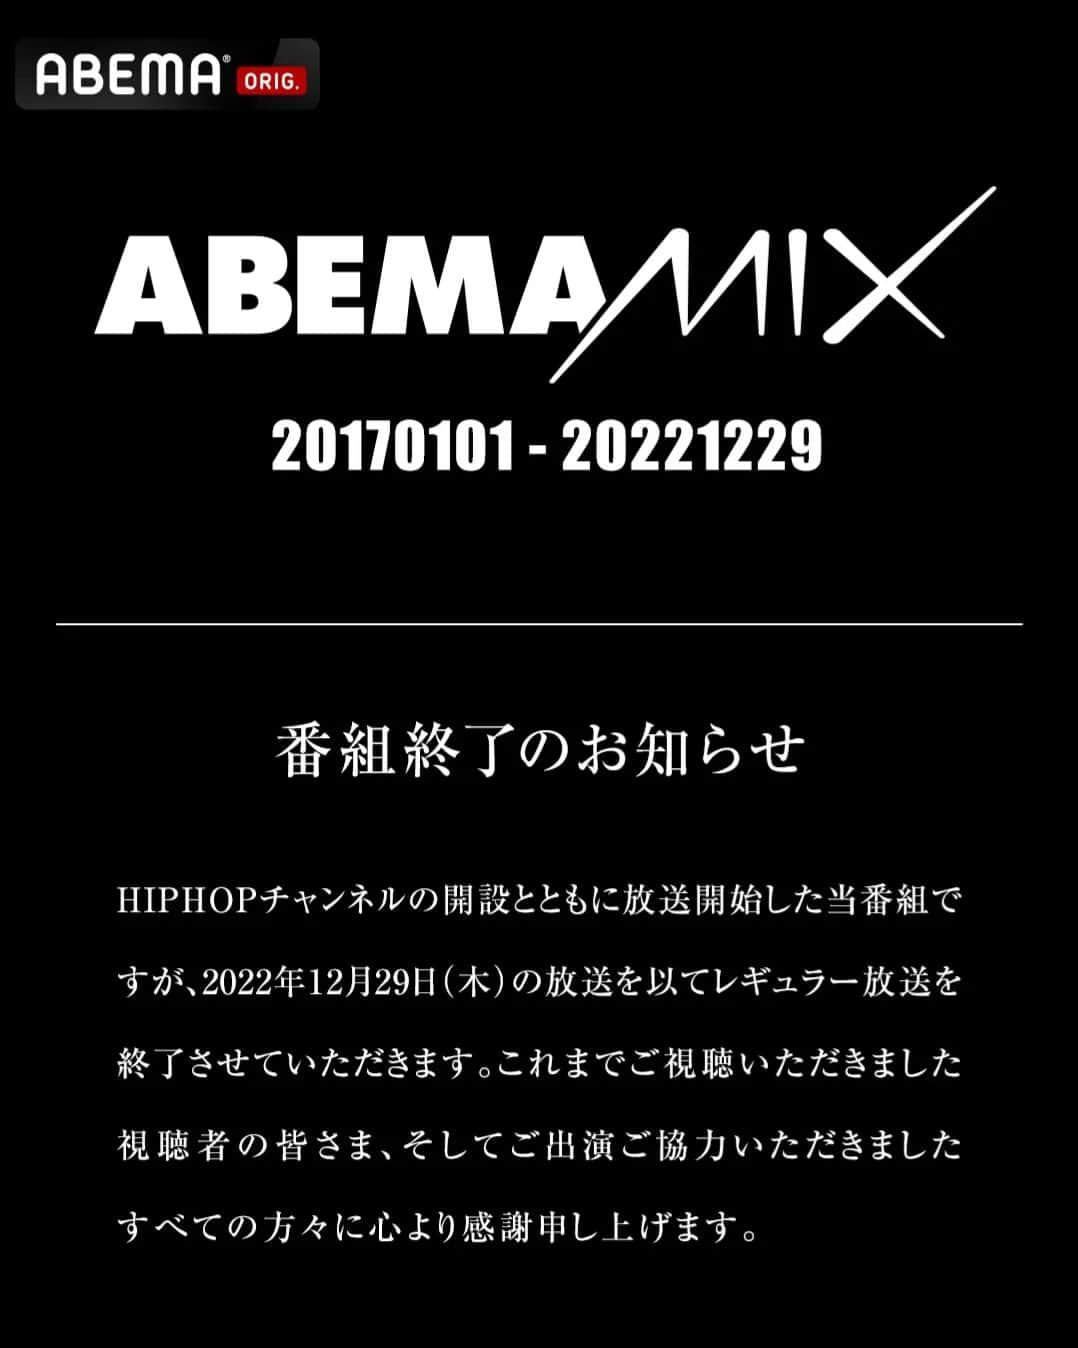 Rei Tominagaのインスタグラム：「ABEMAMIX番組終了のお知らせ  僕自身、2019年の4月から4年近くVJを担当させてもらったABEMAMIXが年内でレギュラー放送を終了します。  もう自分の生活の一部となっていましたし、暖かい雰囲気のスタジオとスタッフの皆さん、視聴者の皆さんともう同じ時間を過ごすことはないのだと思うと、寂しい限りです。  自分の仕事の中でも、コロナの時期にも唯一番組は続いて「助かった」と思いました。自分が心臓の病気で手術して退院したあとも再び迎え入れてもらい、何度も助けて頂いた思いがあります。  数えると400回ほどVJを担当し、レギュラーVJの中では一番多く出演させて頂きました。  思い返すといろいろなことがありすぎて、ここには書き切れませんが、DJ、スタッフの皆さん、視聴者の方々と沢山の時間を過ごし、思い出が生まれました。本当に楽しかった。書ききれないです。  自分の担当は残り2回、最後に最後の思い出を作りたいと思います。  そして最初にこの番組にお誘い頂いた @djhazime さん @ssotalo さん ありがとうございました。  #abemamix」